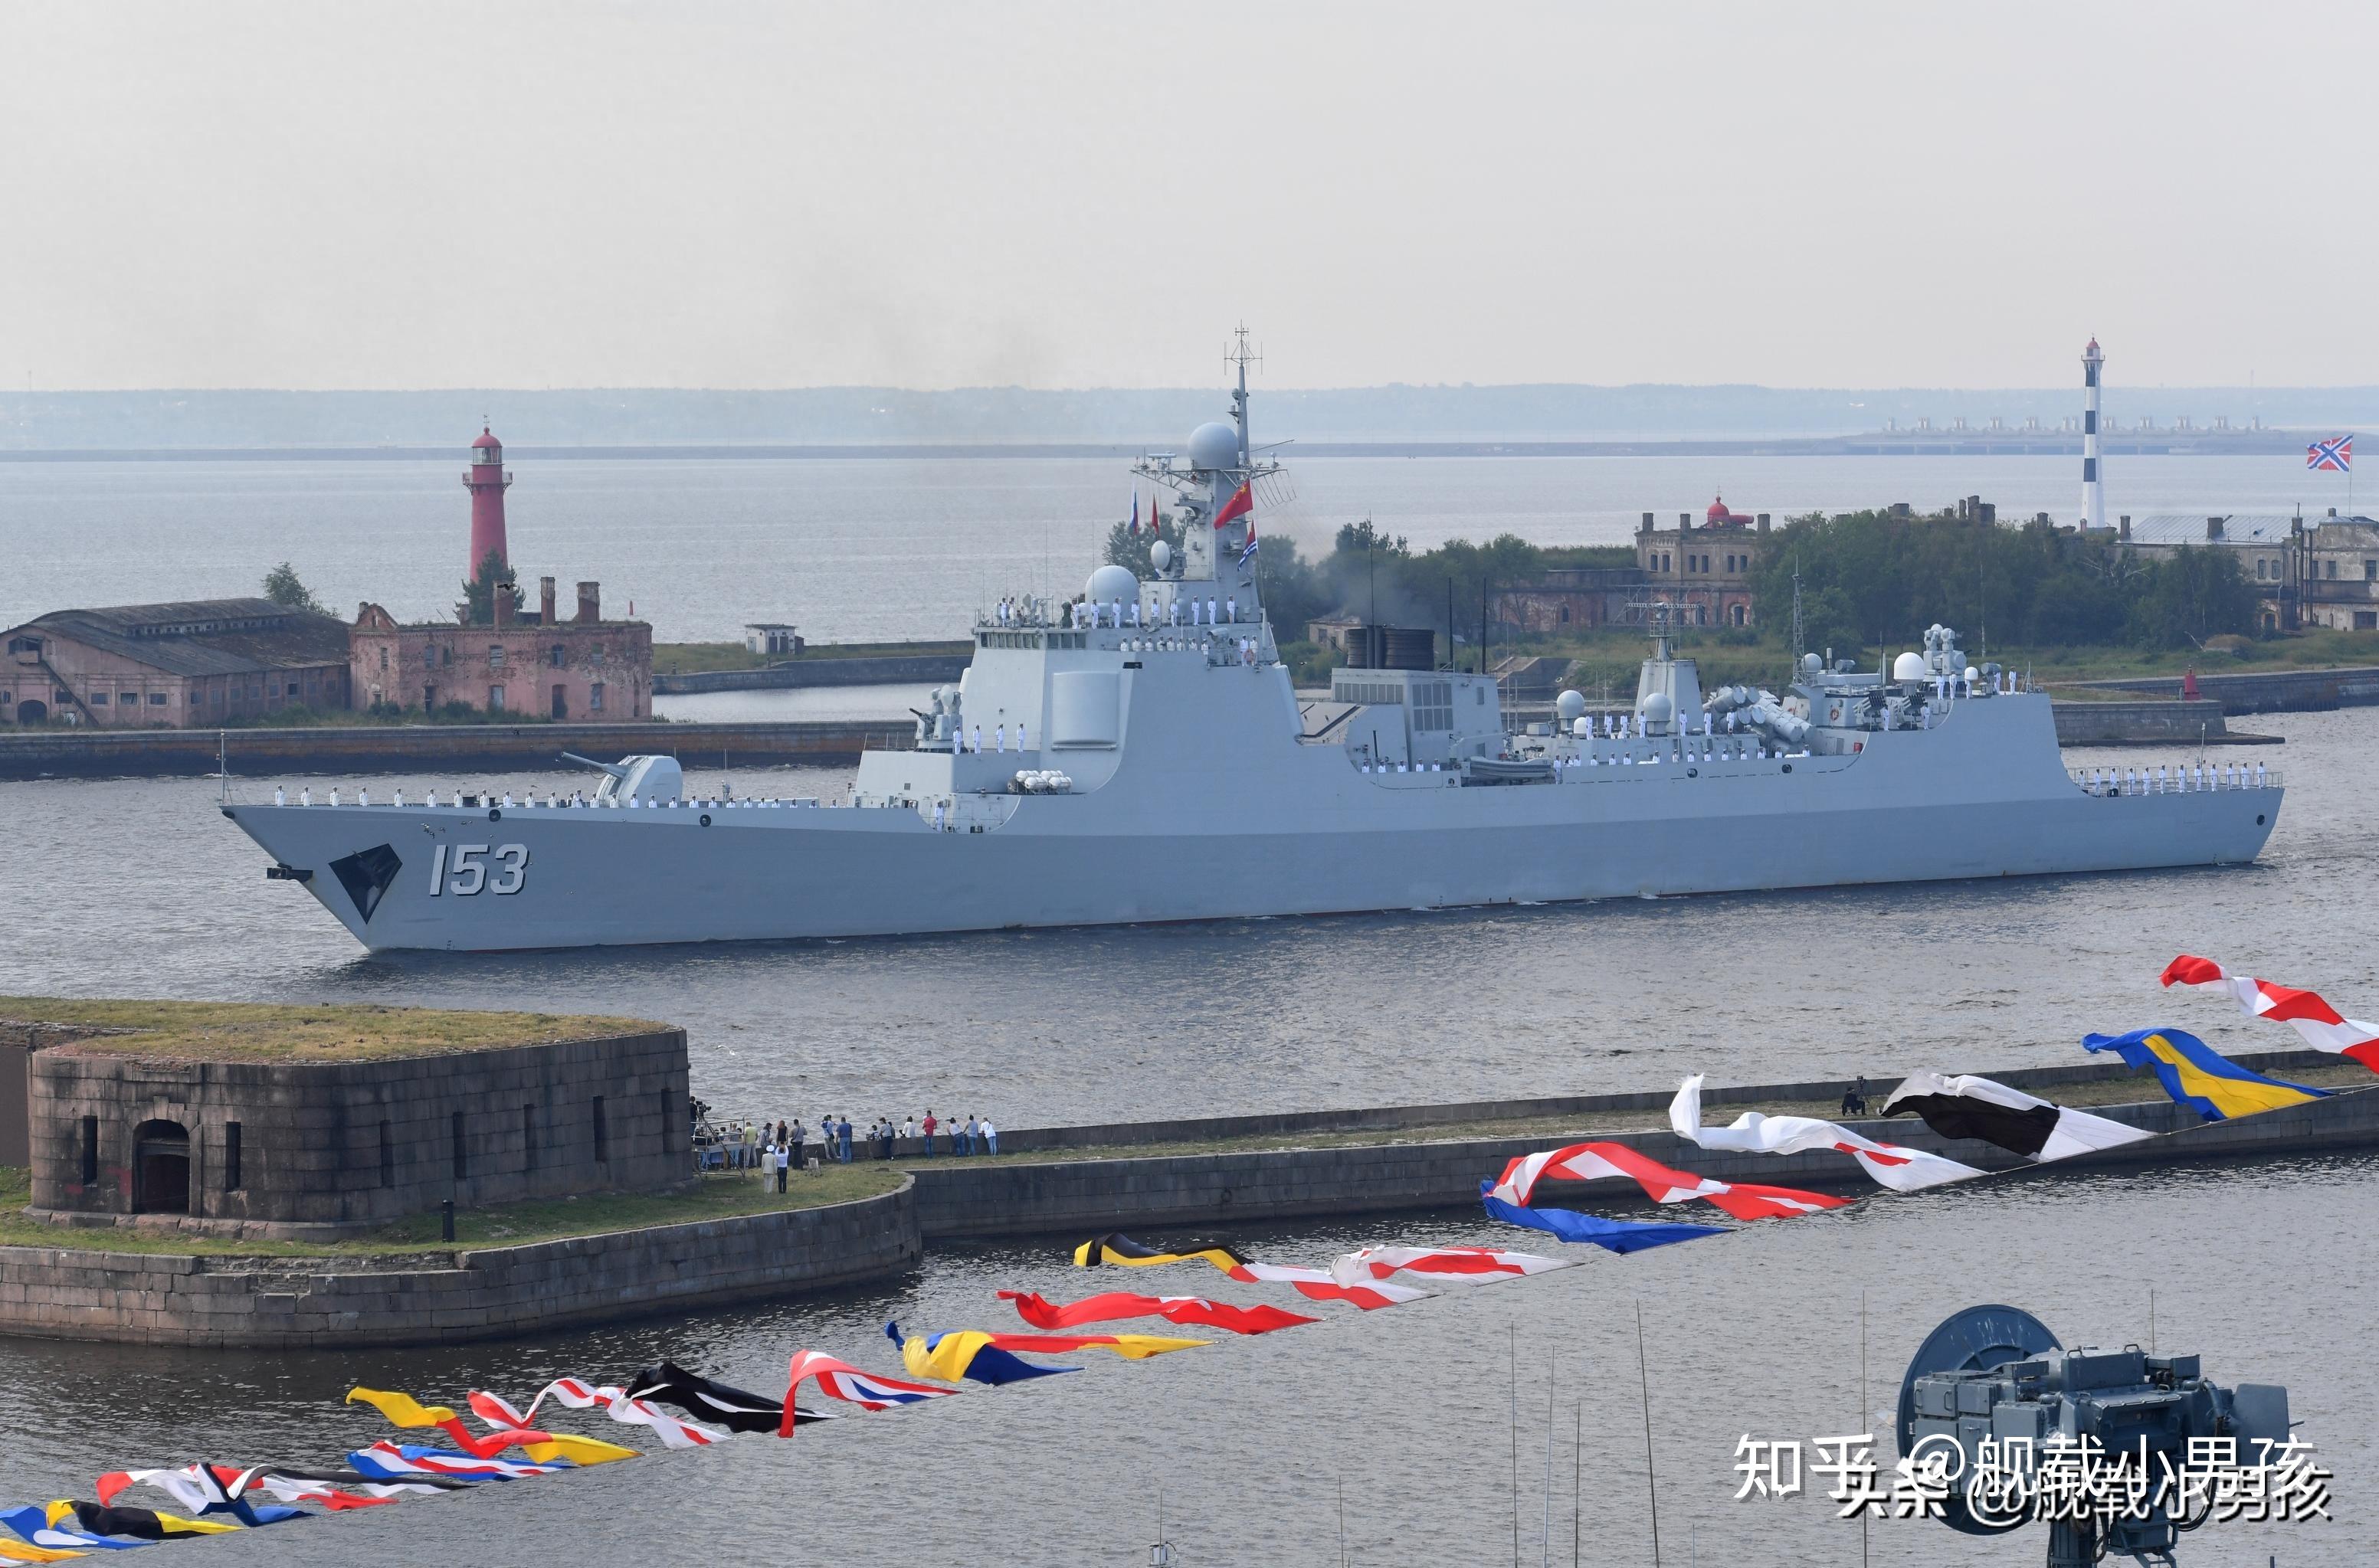 海军170舰事件图片